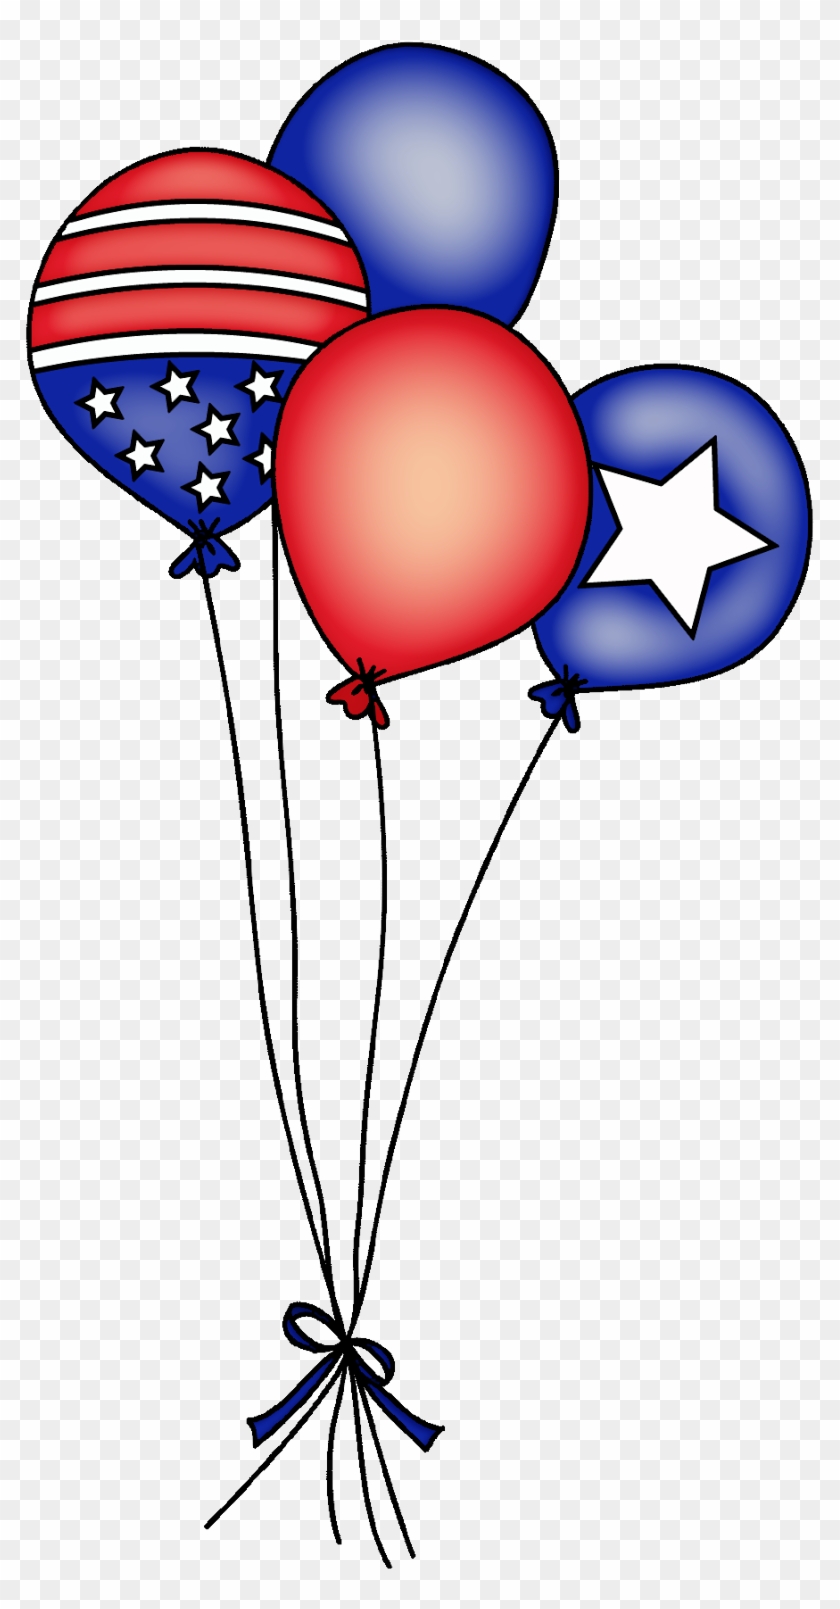 Balloon Clipart 4th July - Balloon Clipart 4th July #1534498